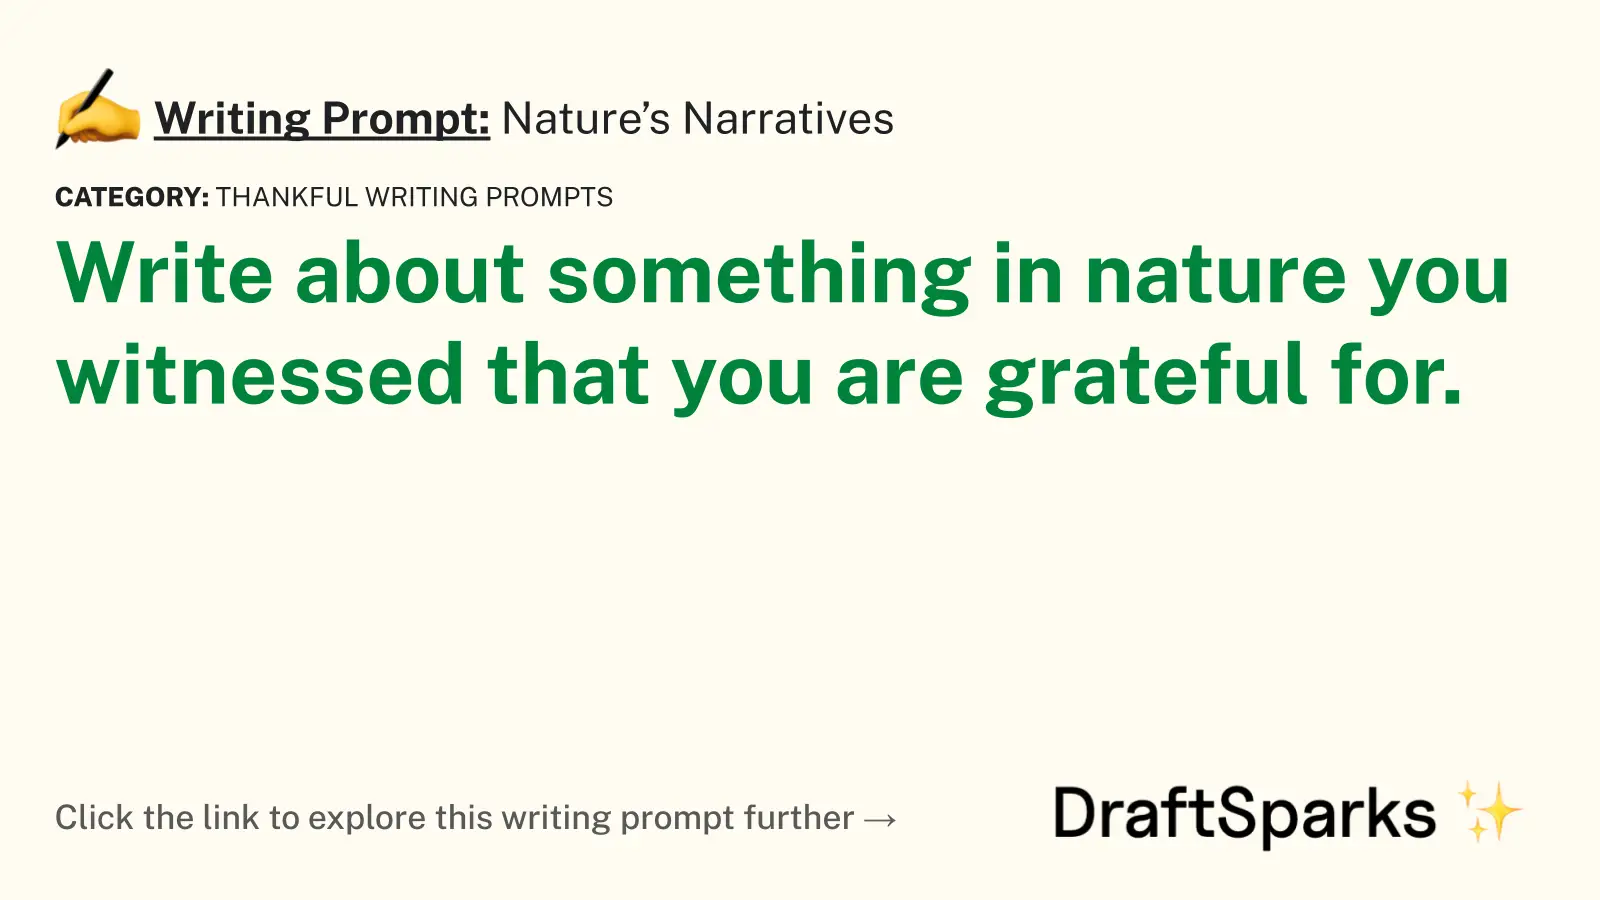 Nature’s Narratives